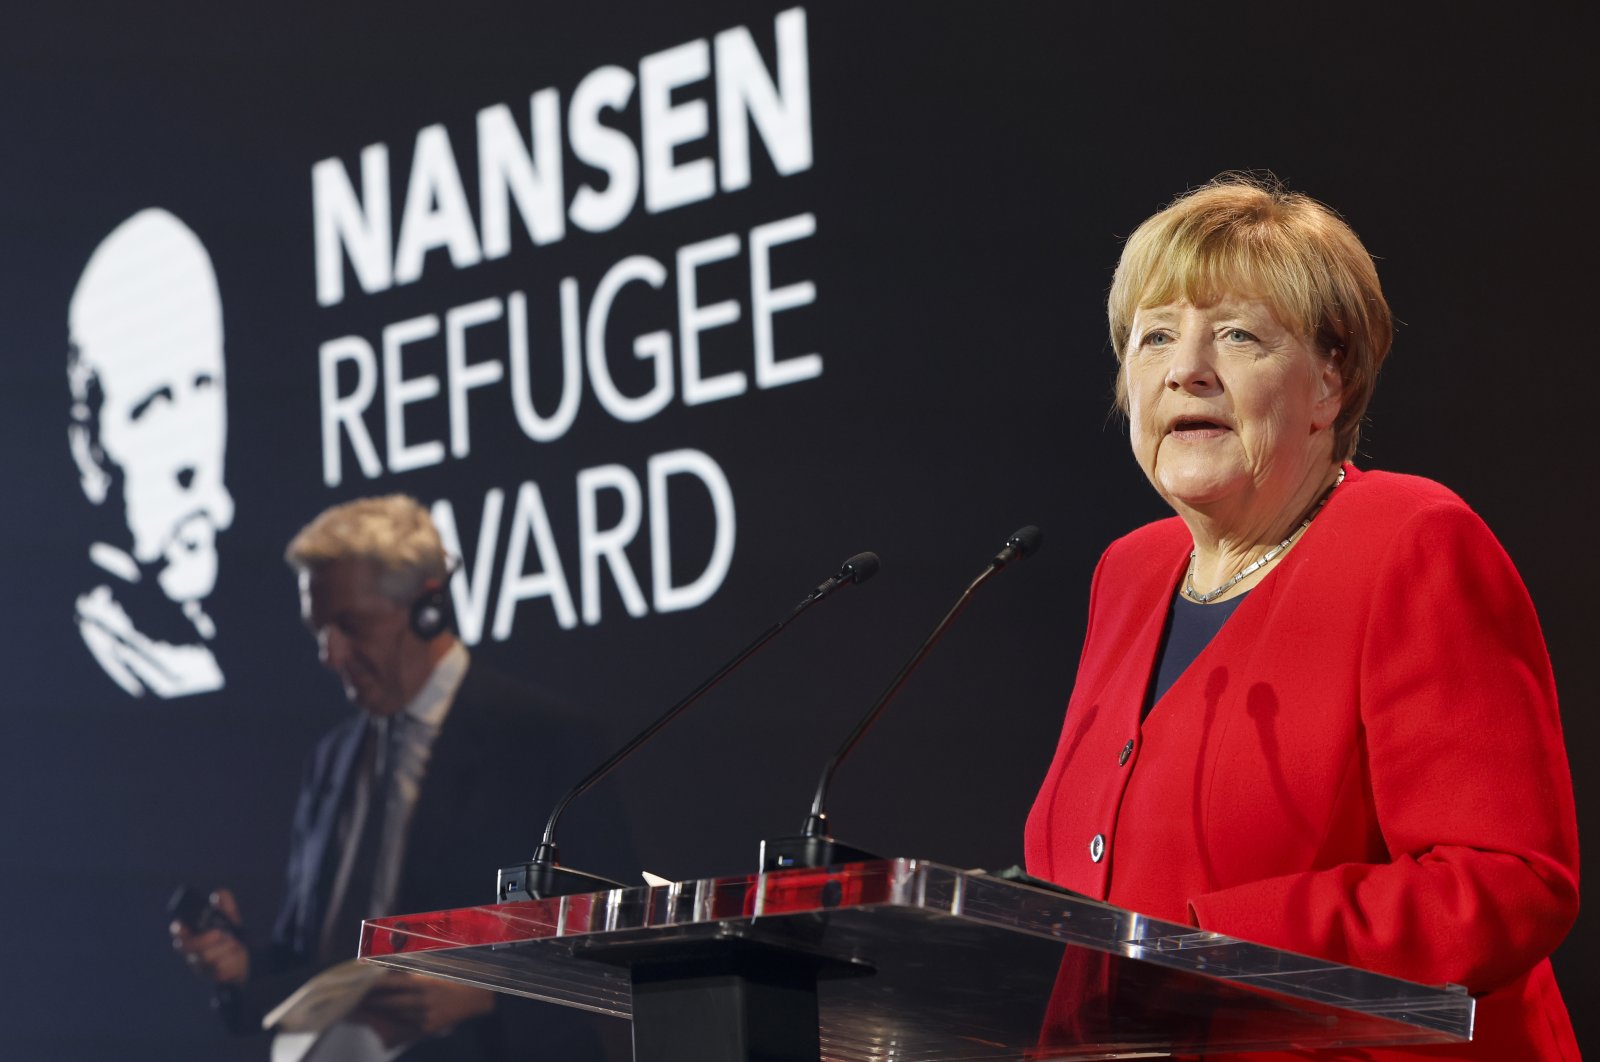 Mantan kanselir Jerman Merkel mendedikasikan penghargaan pengungsi untuk sukarelawan